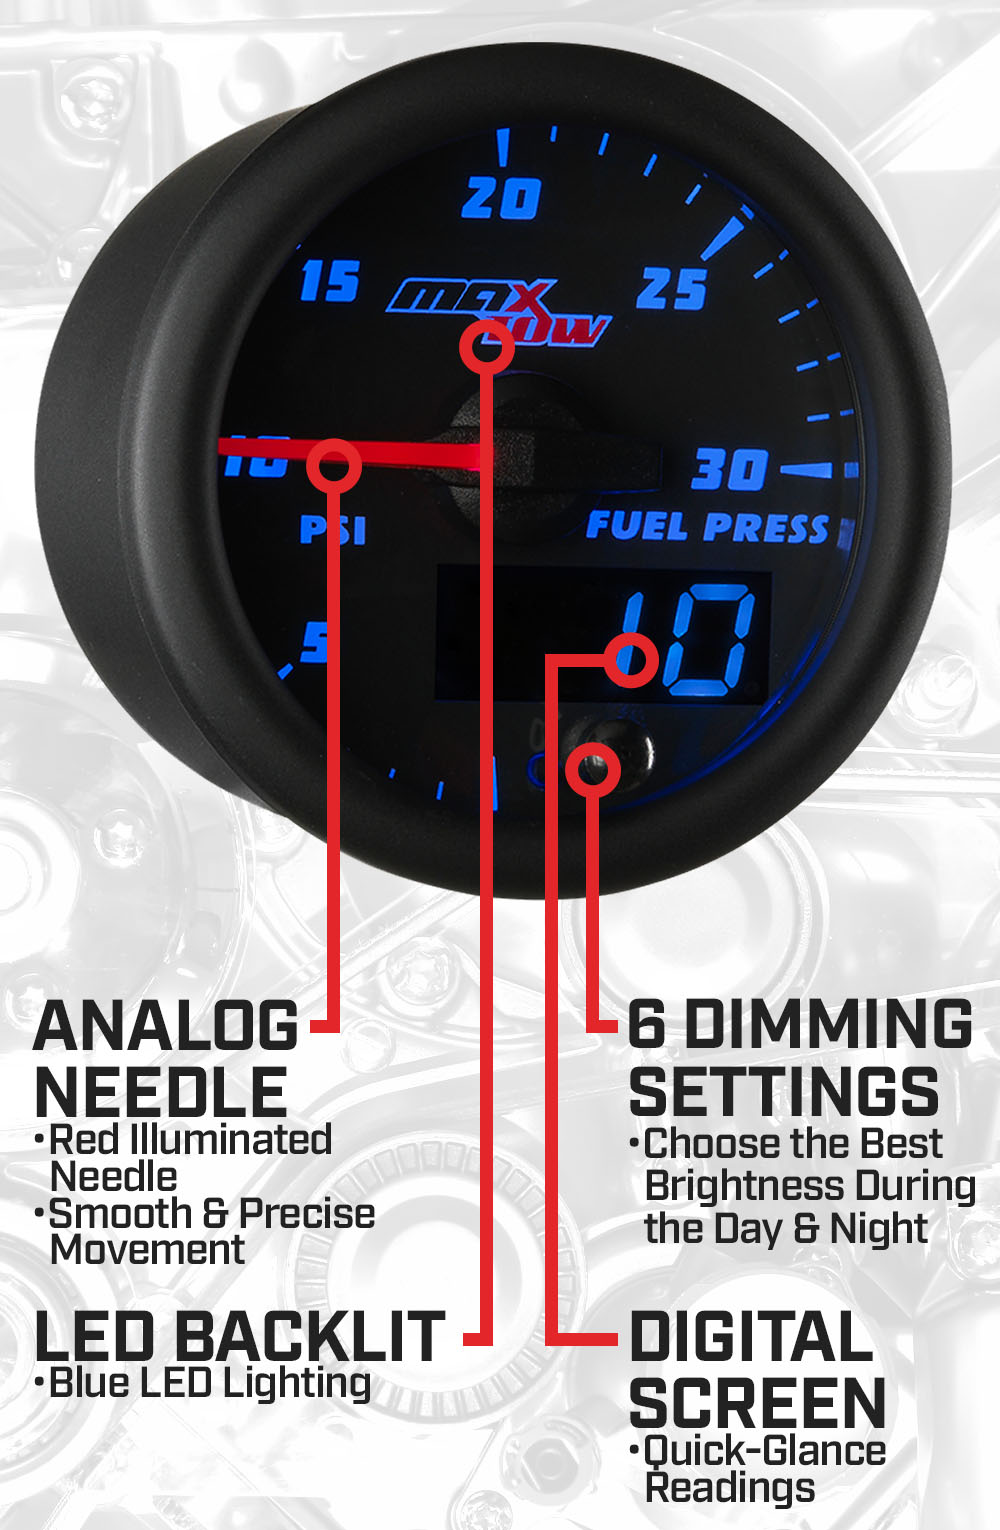 Black & Blue Double Vision 30 PSI Fuel Pressure Gauge Features